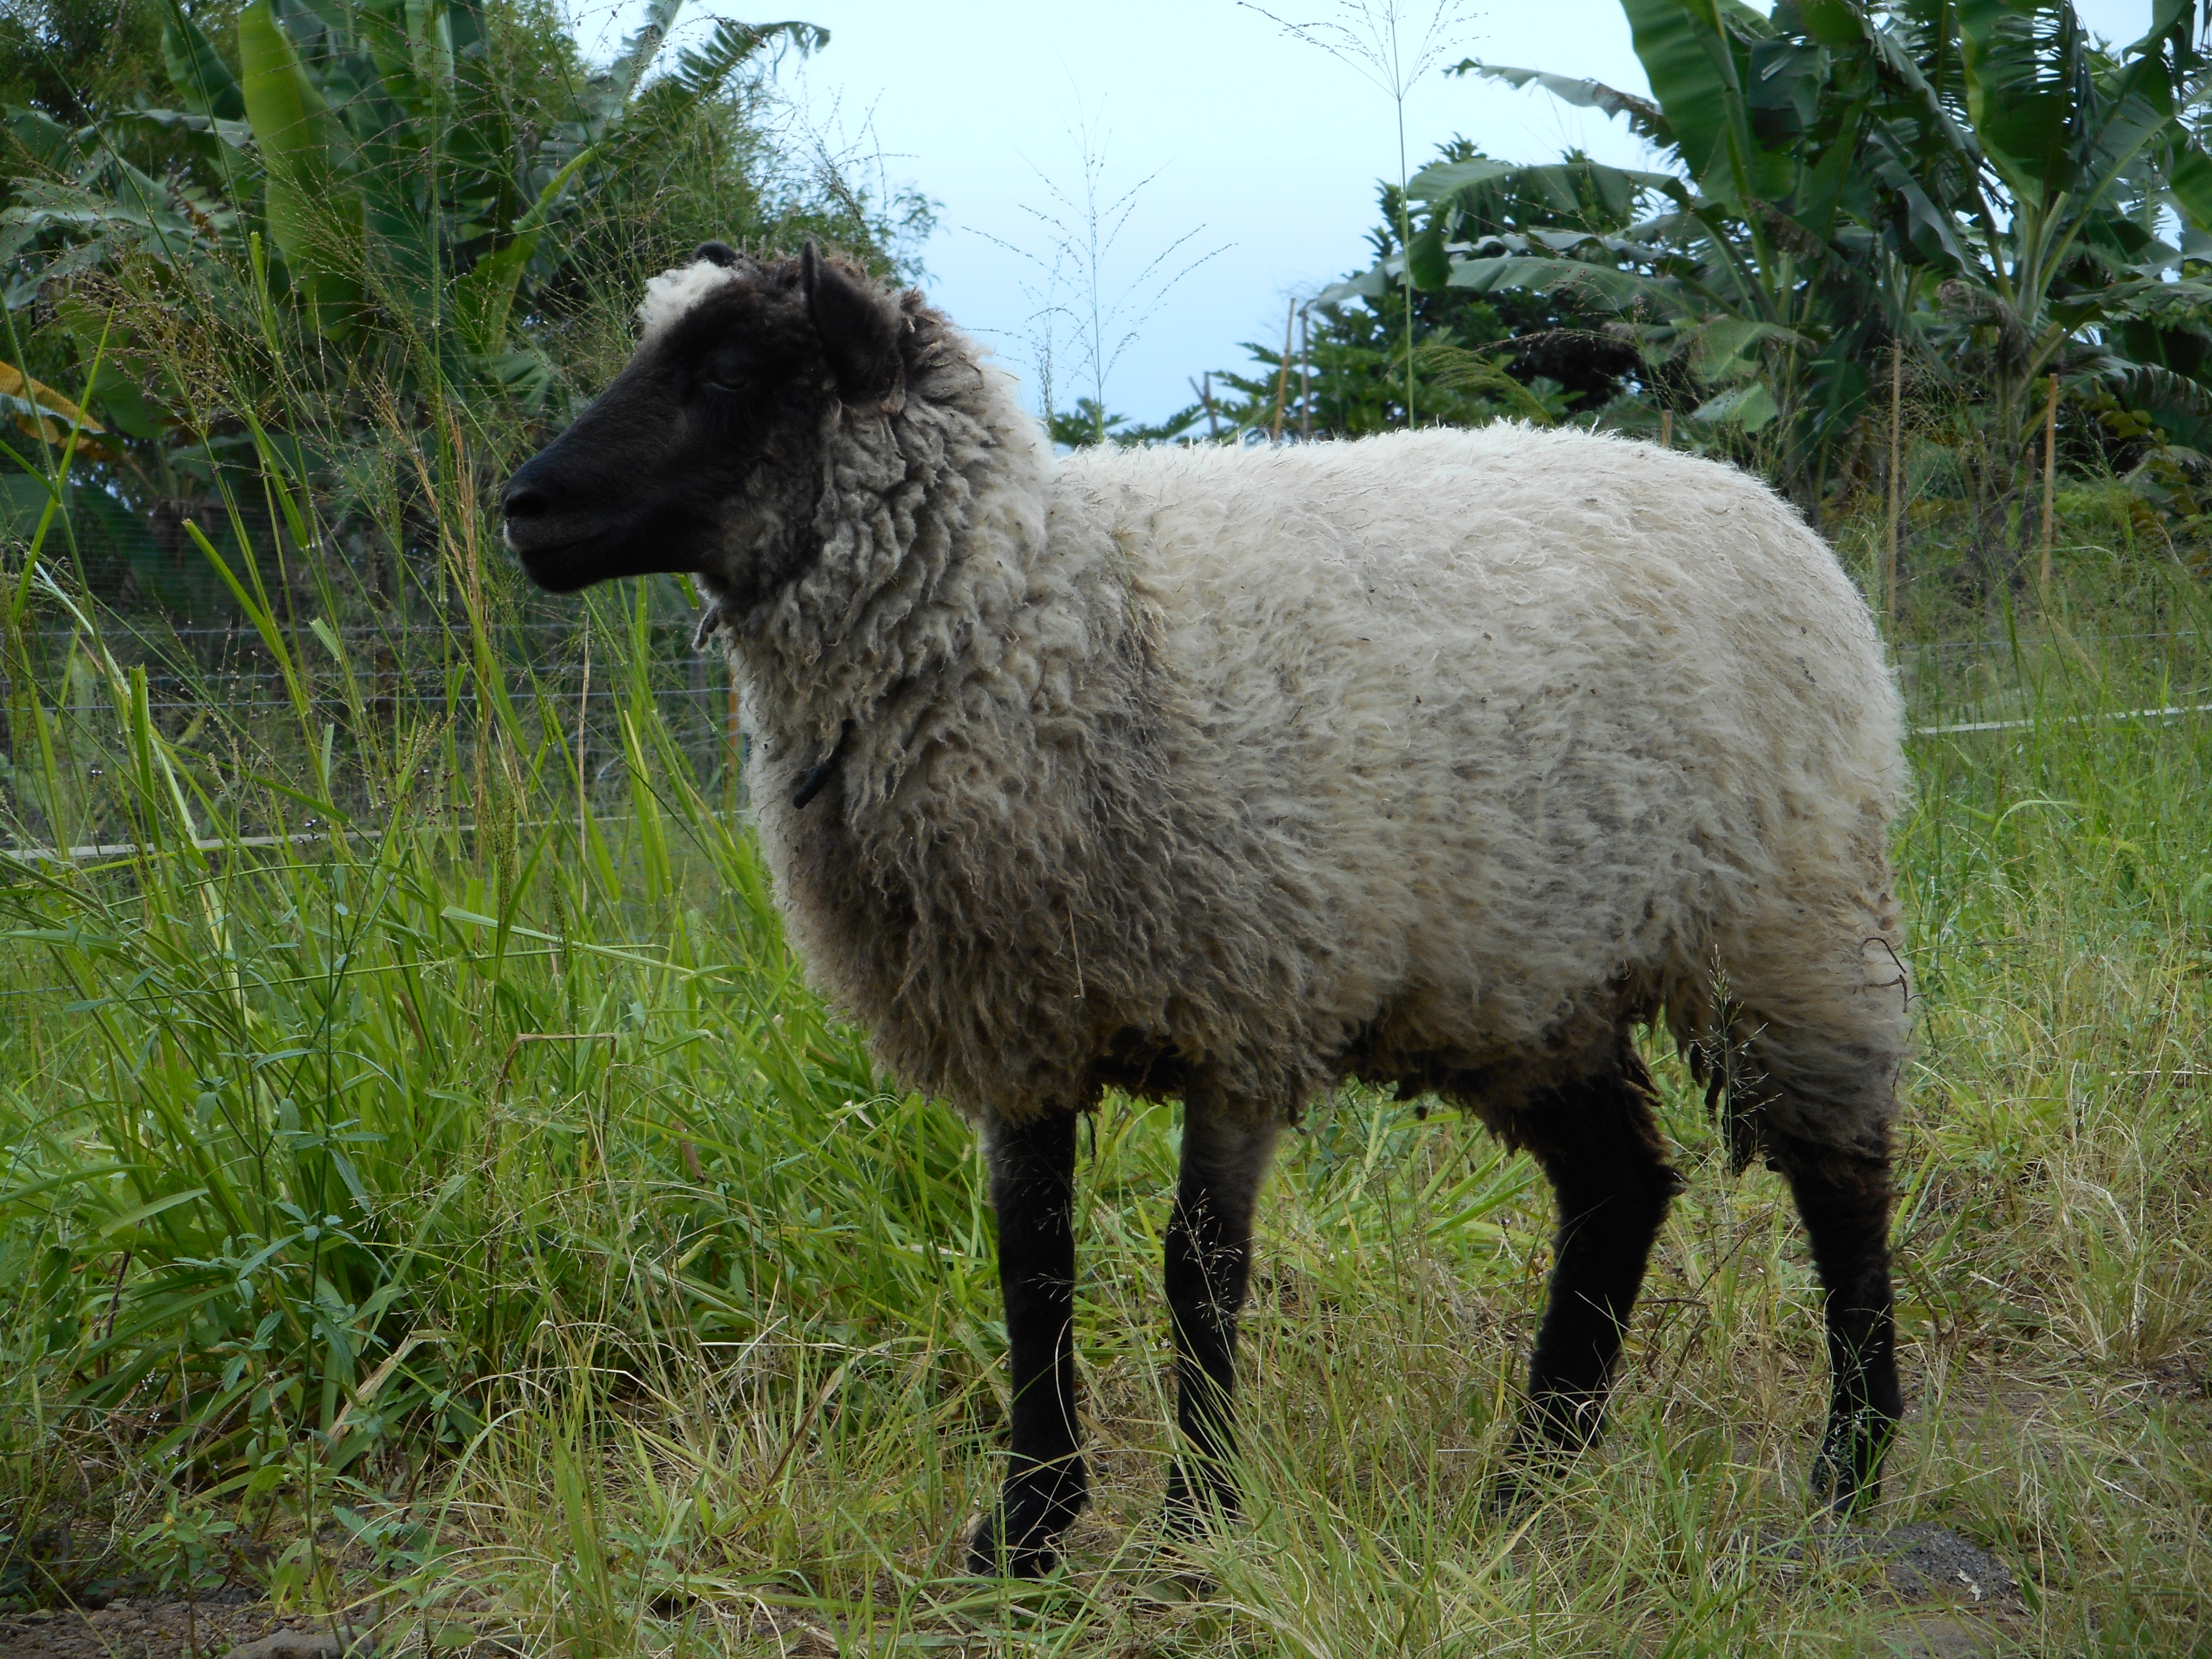 Freesia's ewe lamb